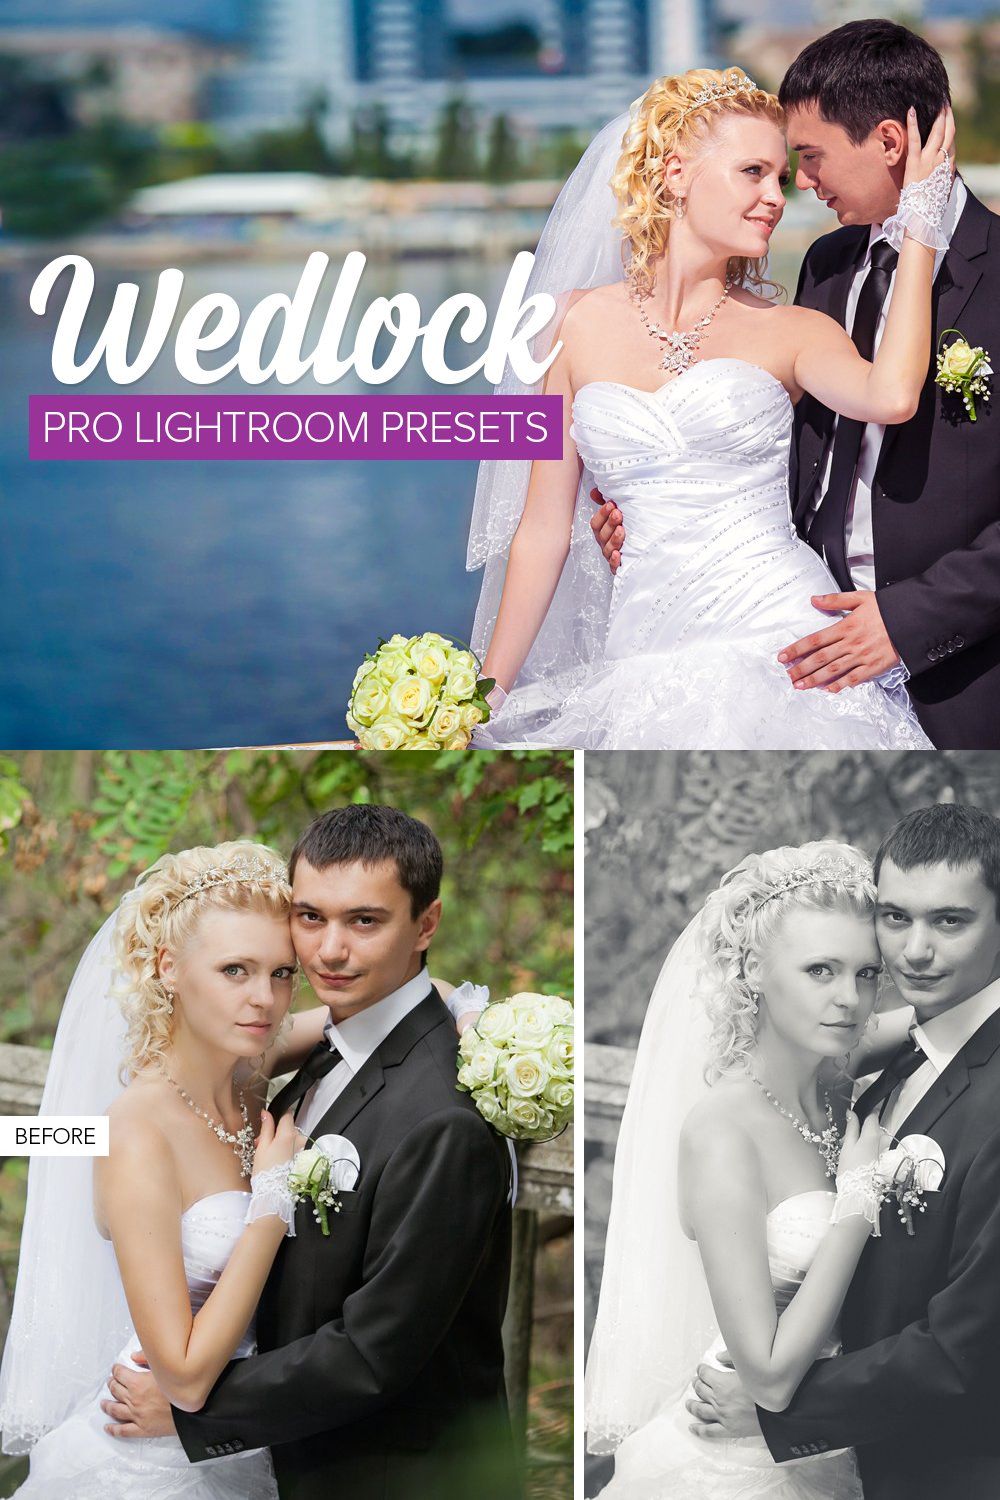 Wedding Lightroom Presets pinterest preview image.